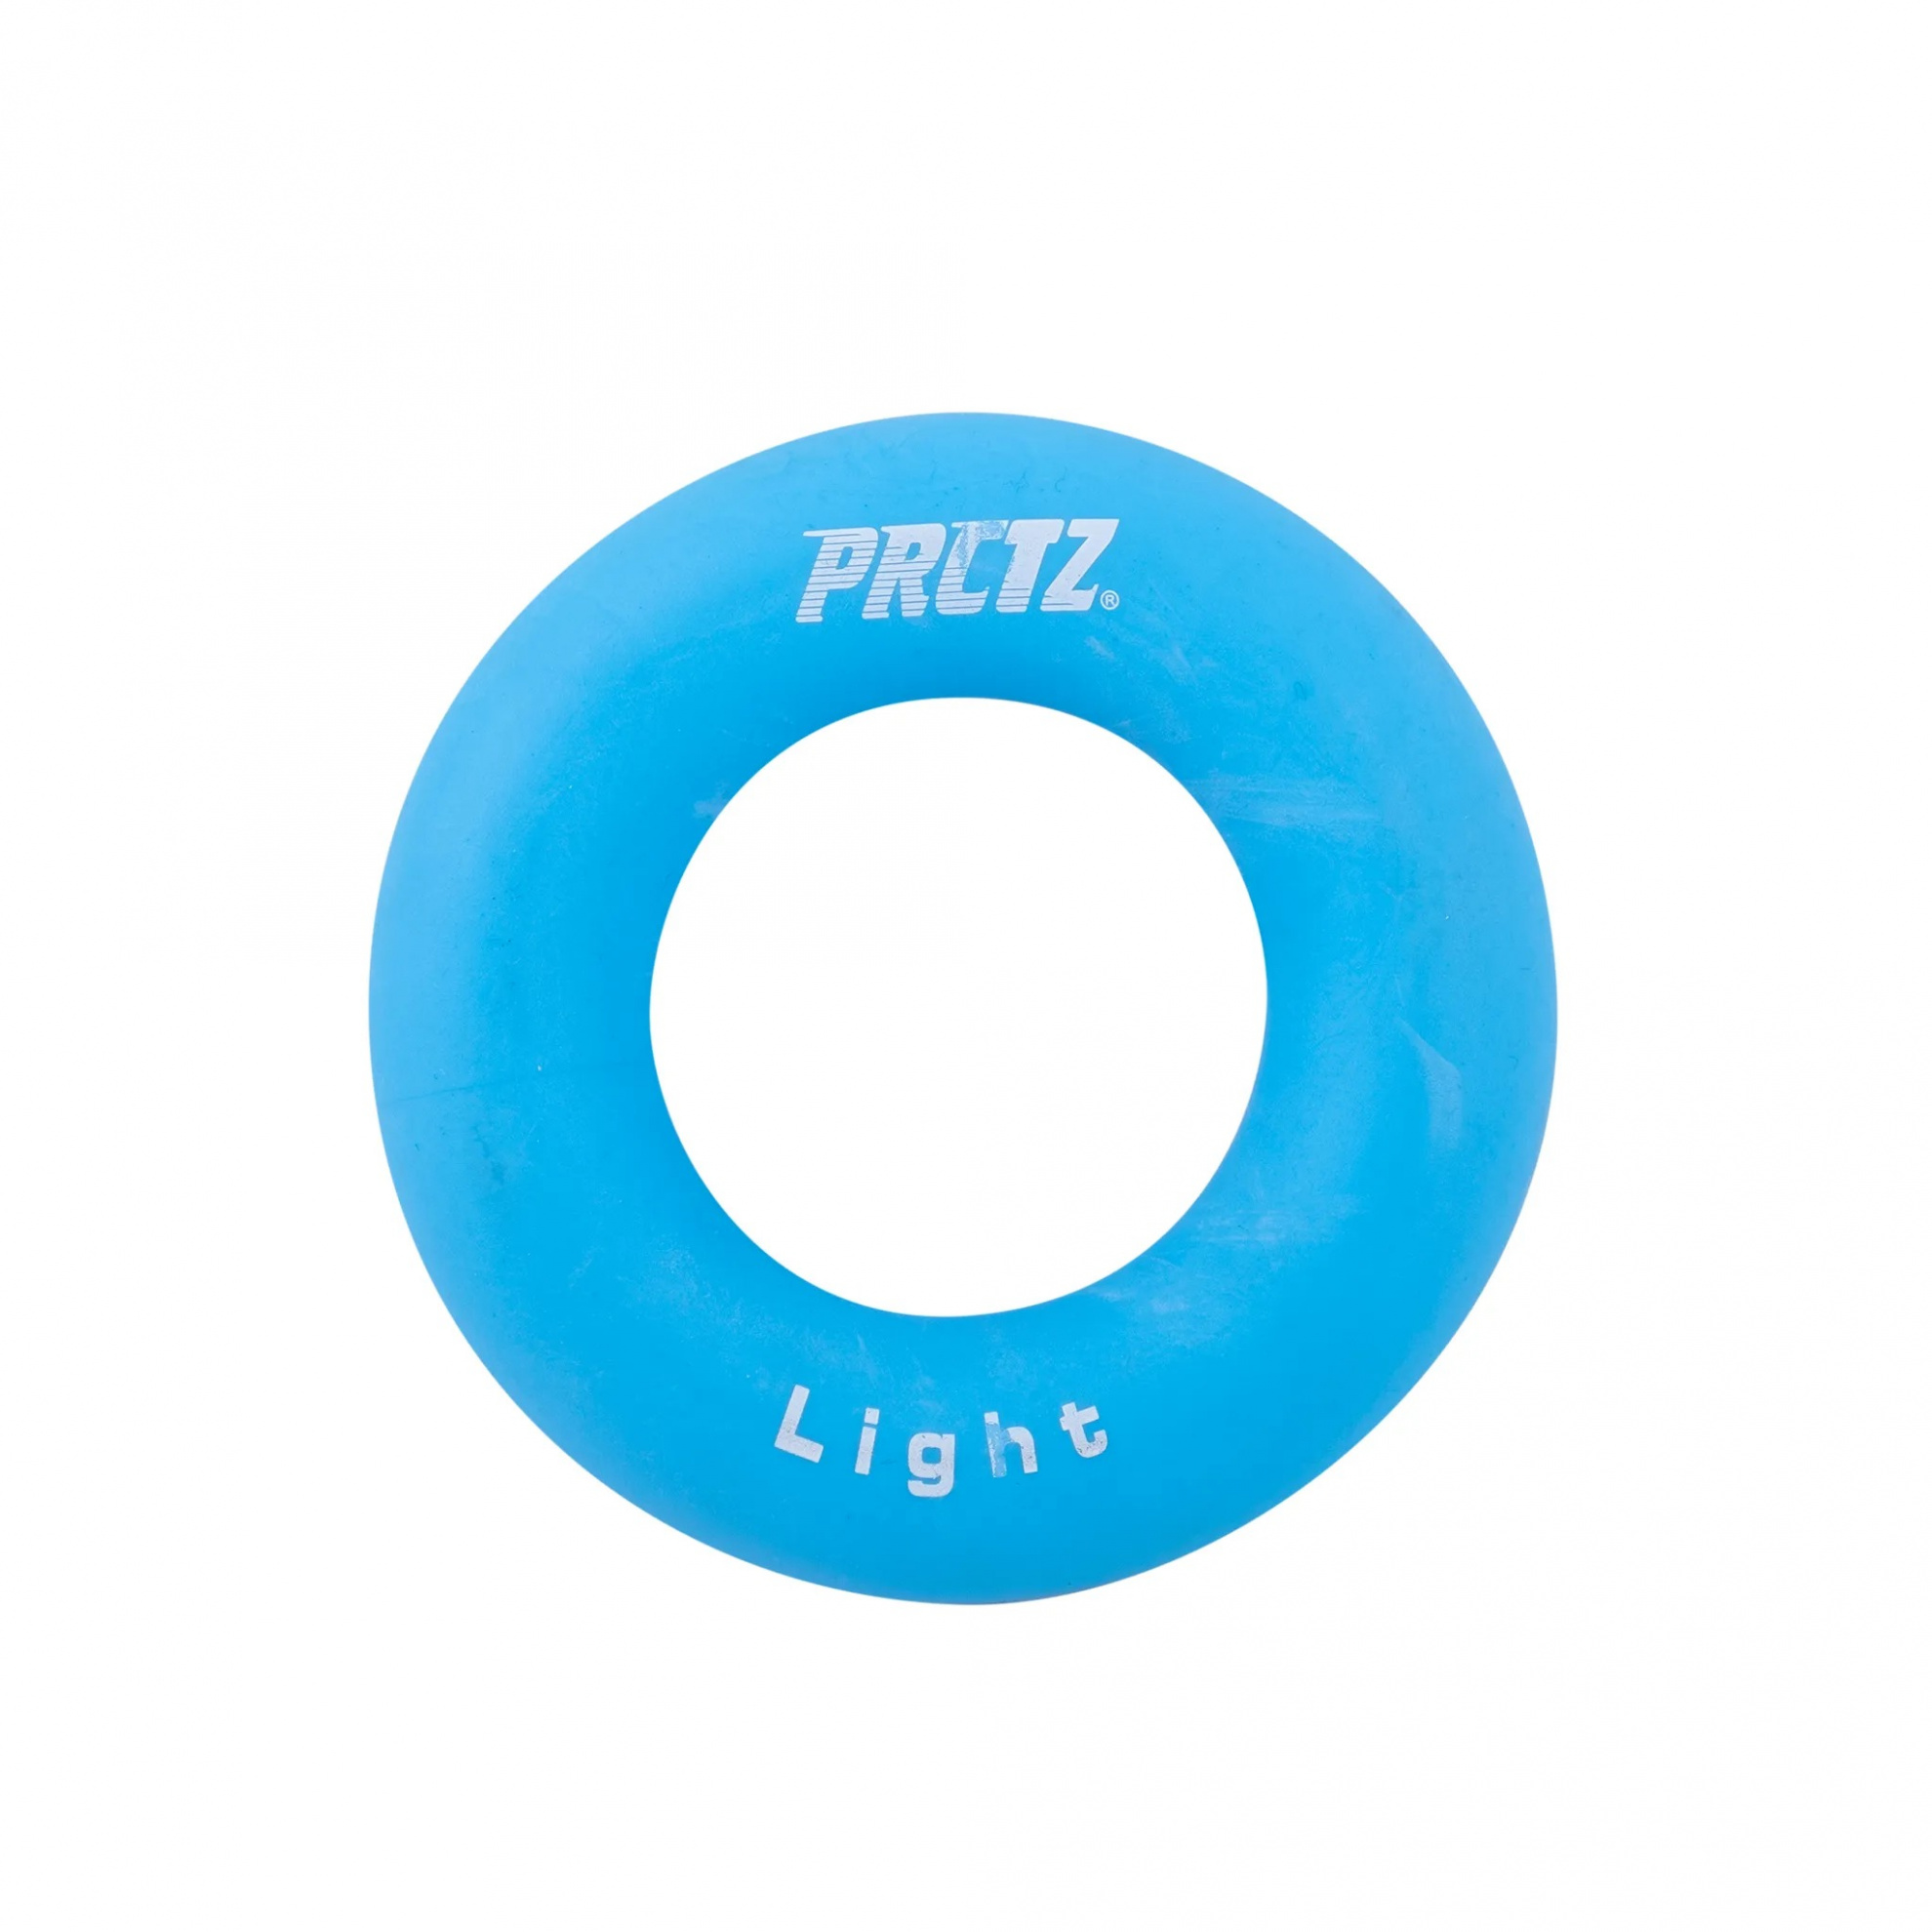 Эспандер-кольцо PRCTZ Power Gripping ring Light, слабое сопротивление